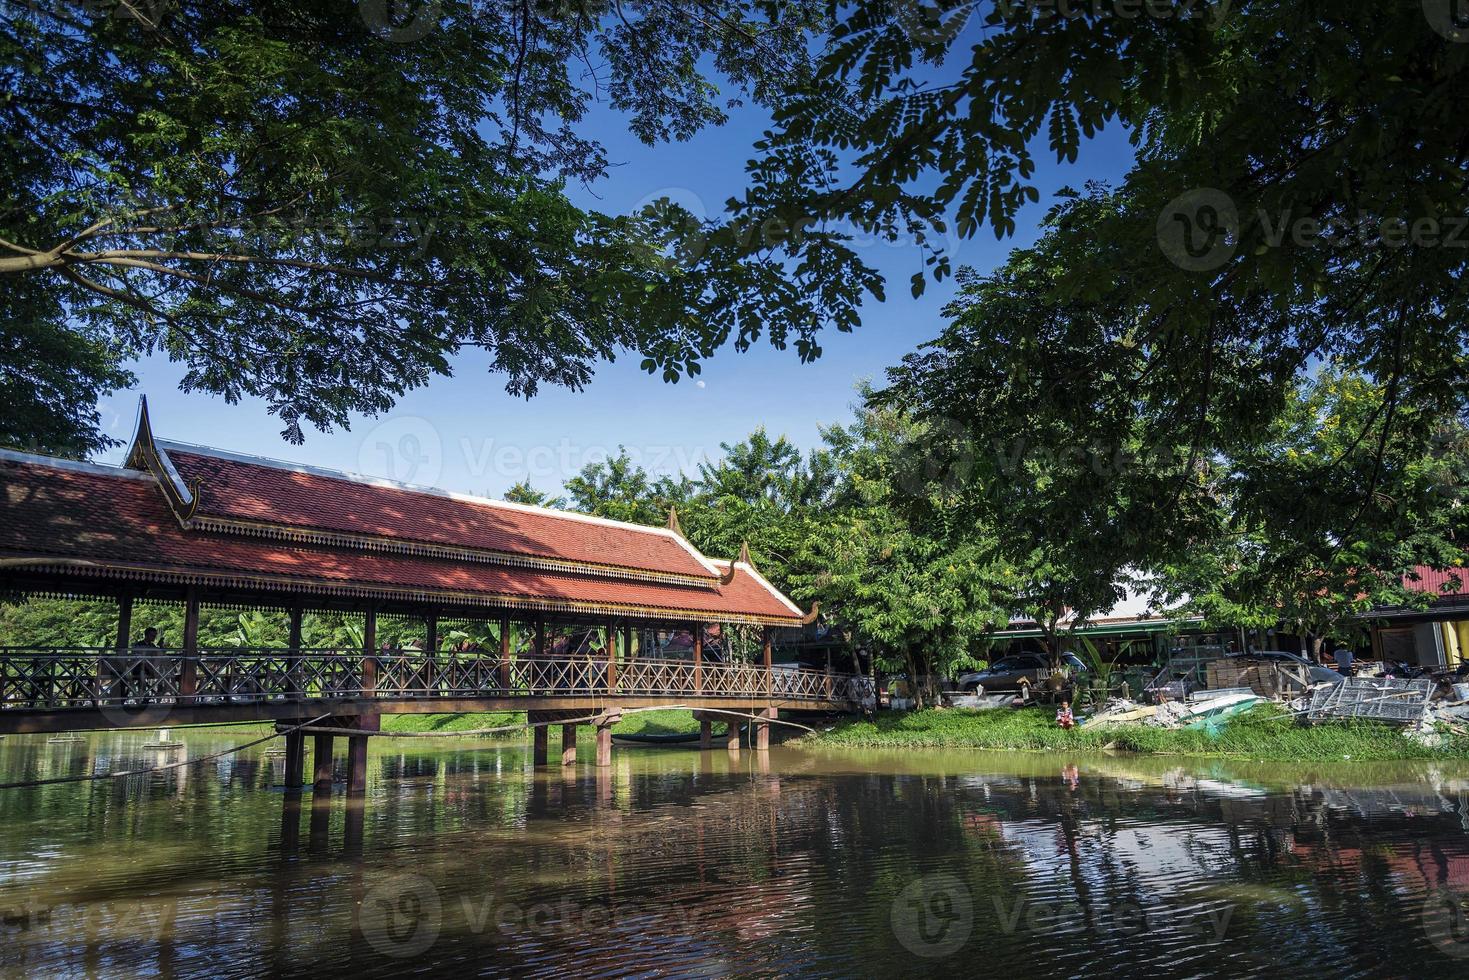 fiume nel centro di siem reap zona turistica della città vecchia in cambogia vicino ad angkor wat foto